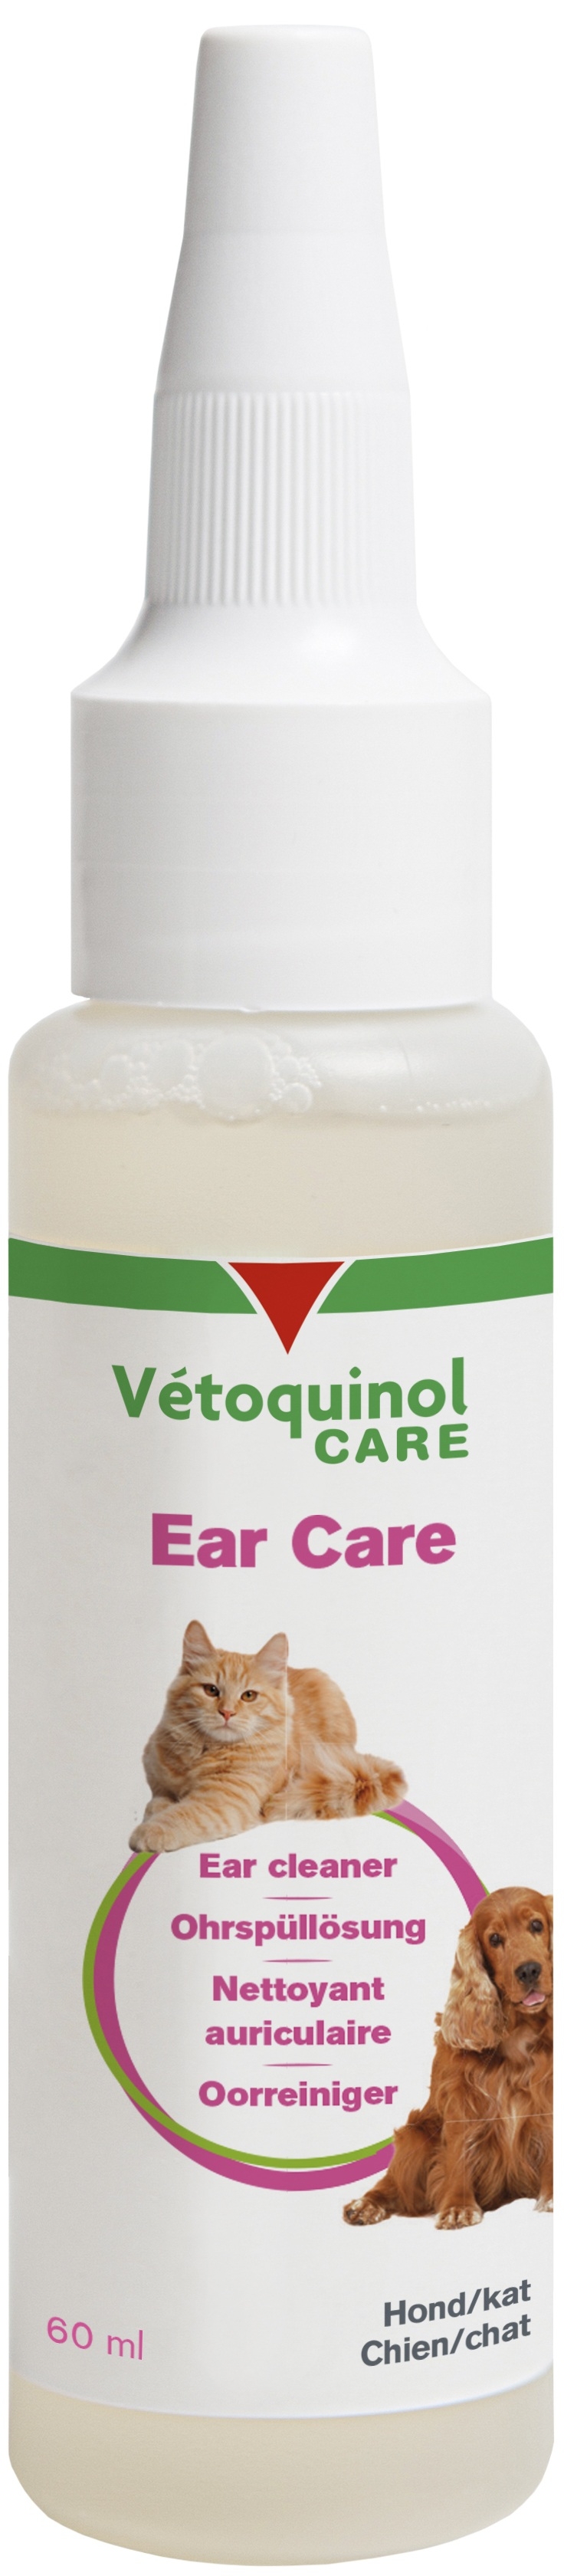 Vetoquinol Ear Care 